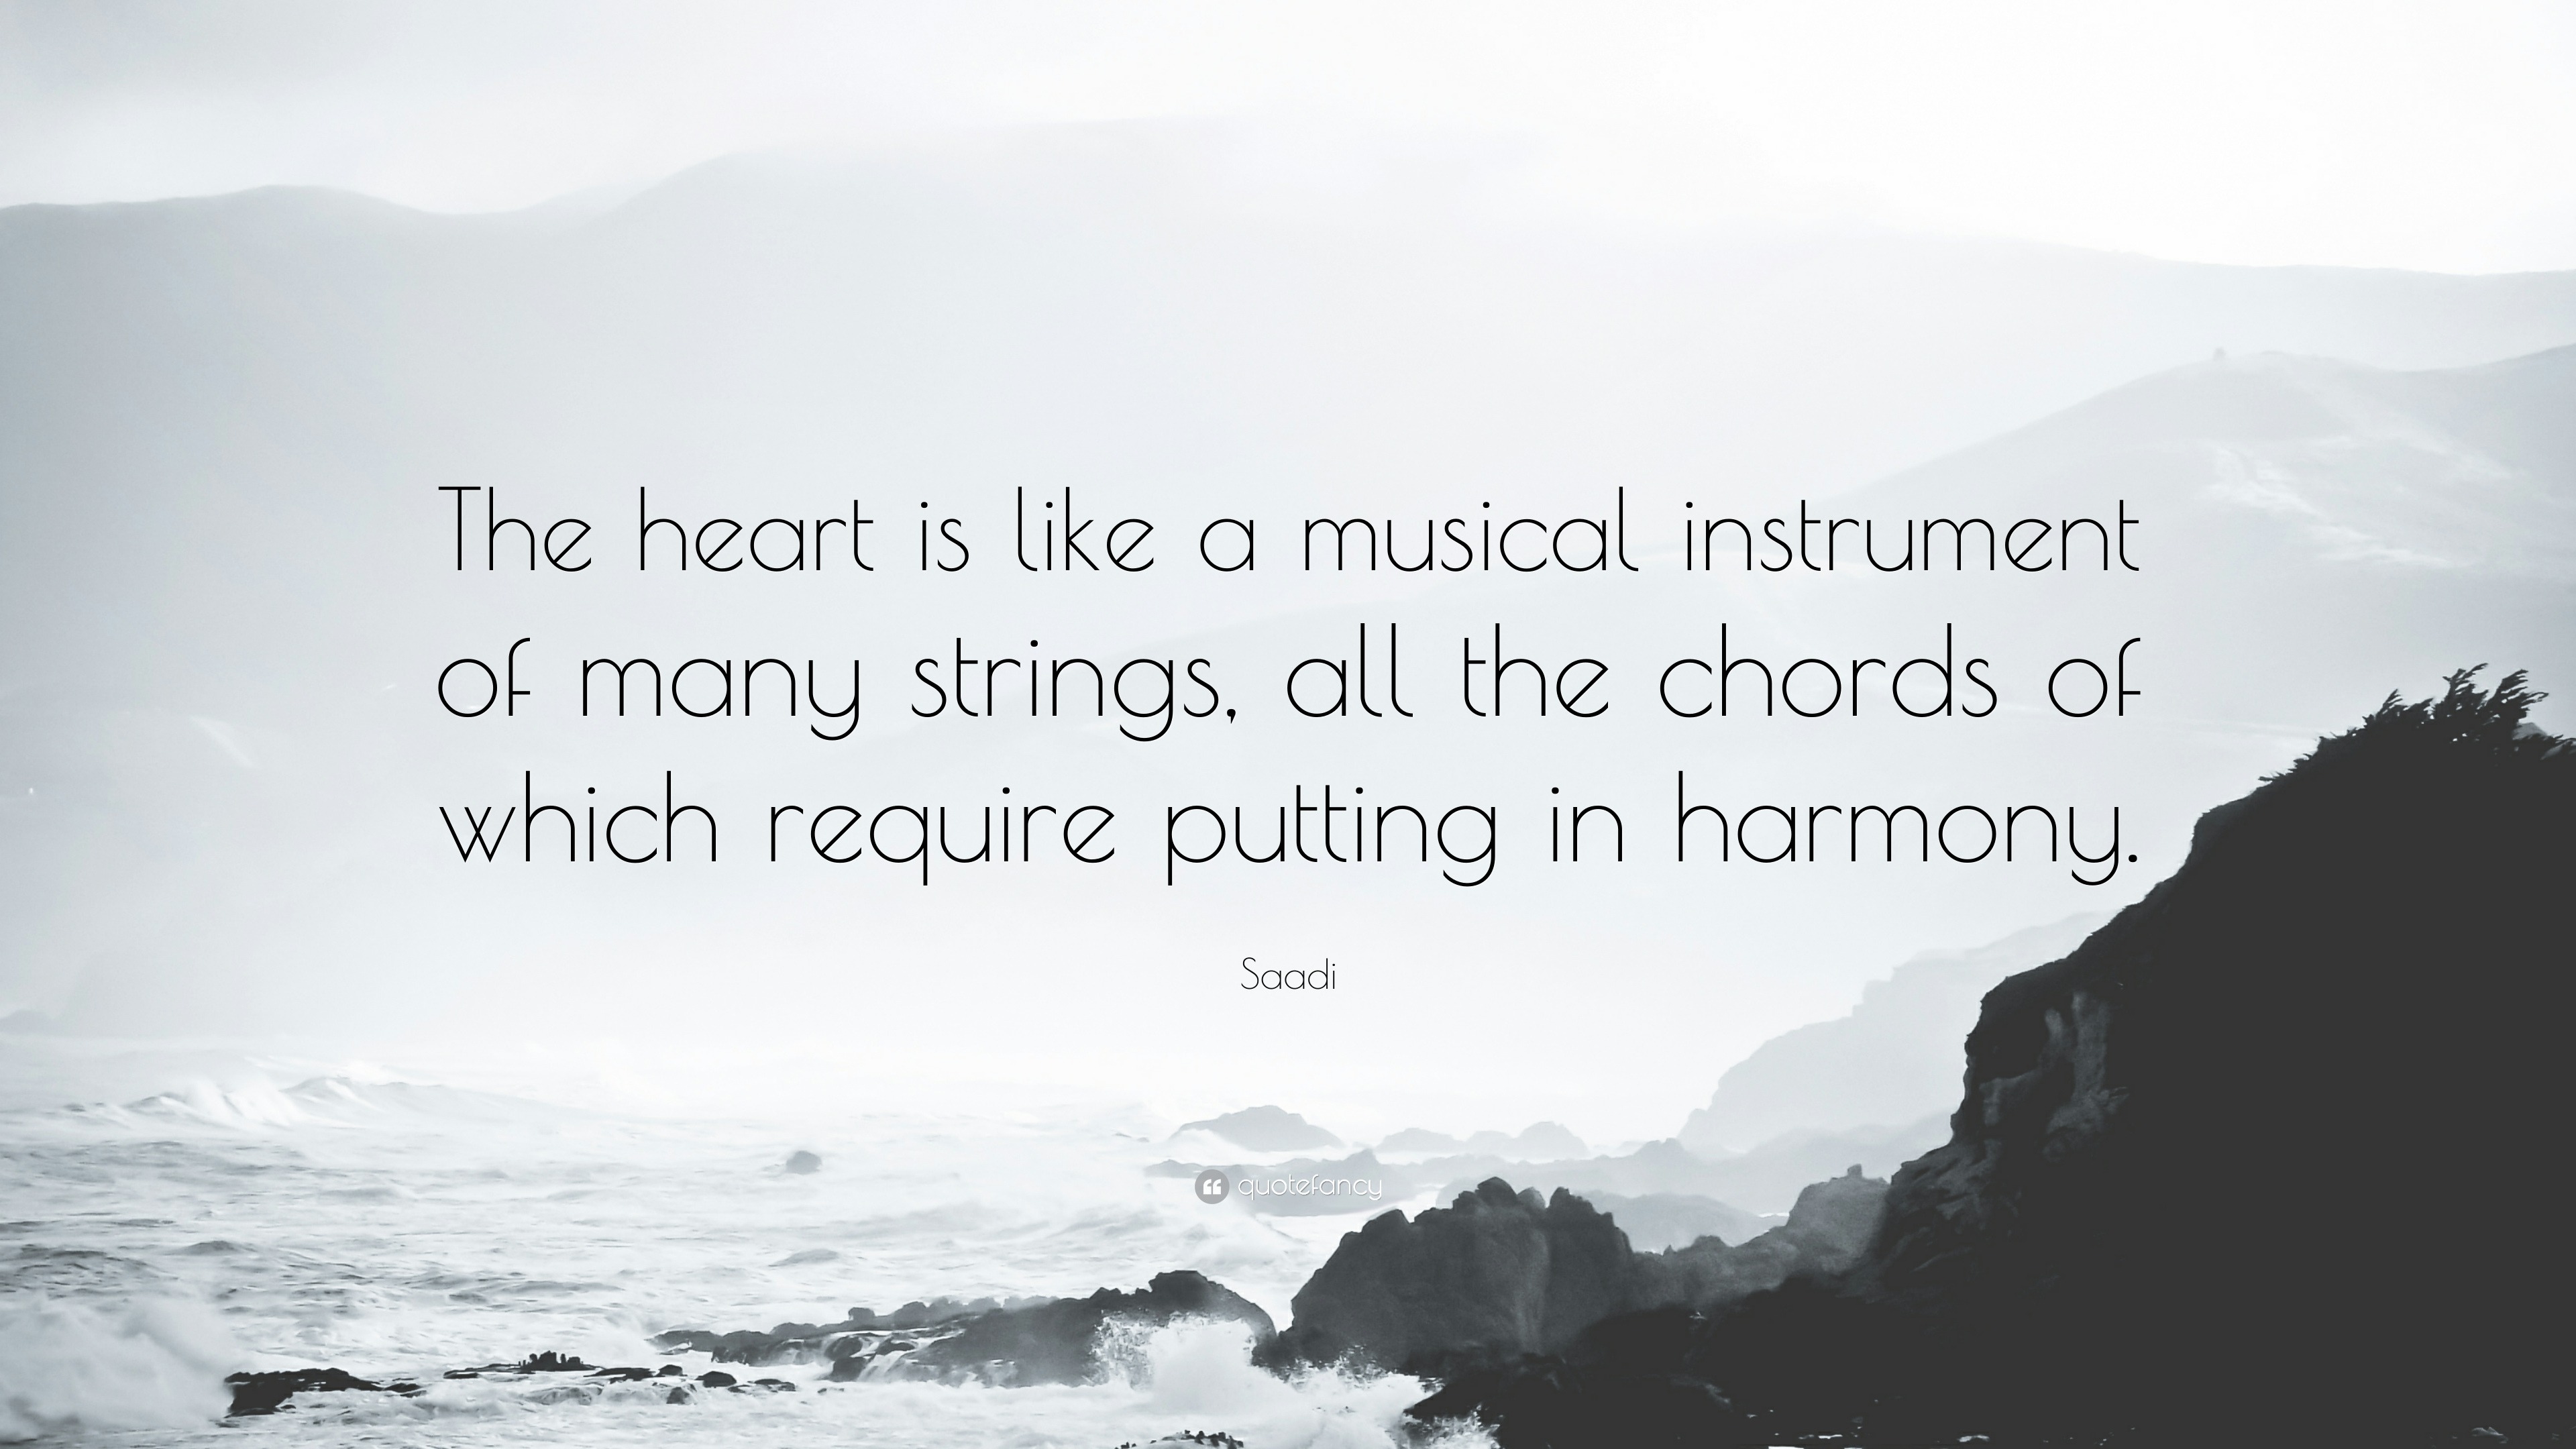 Harmony in the heart